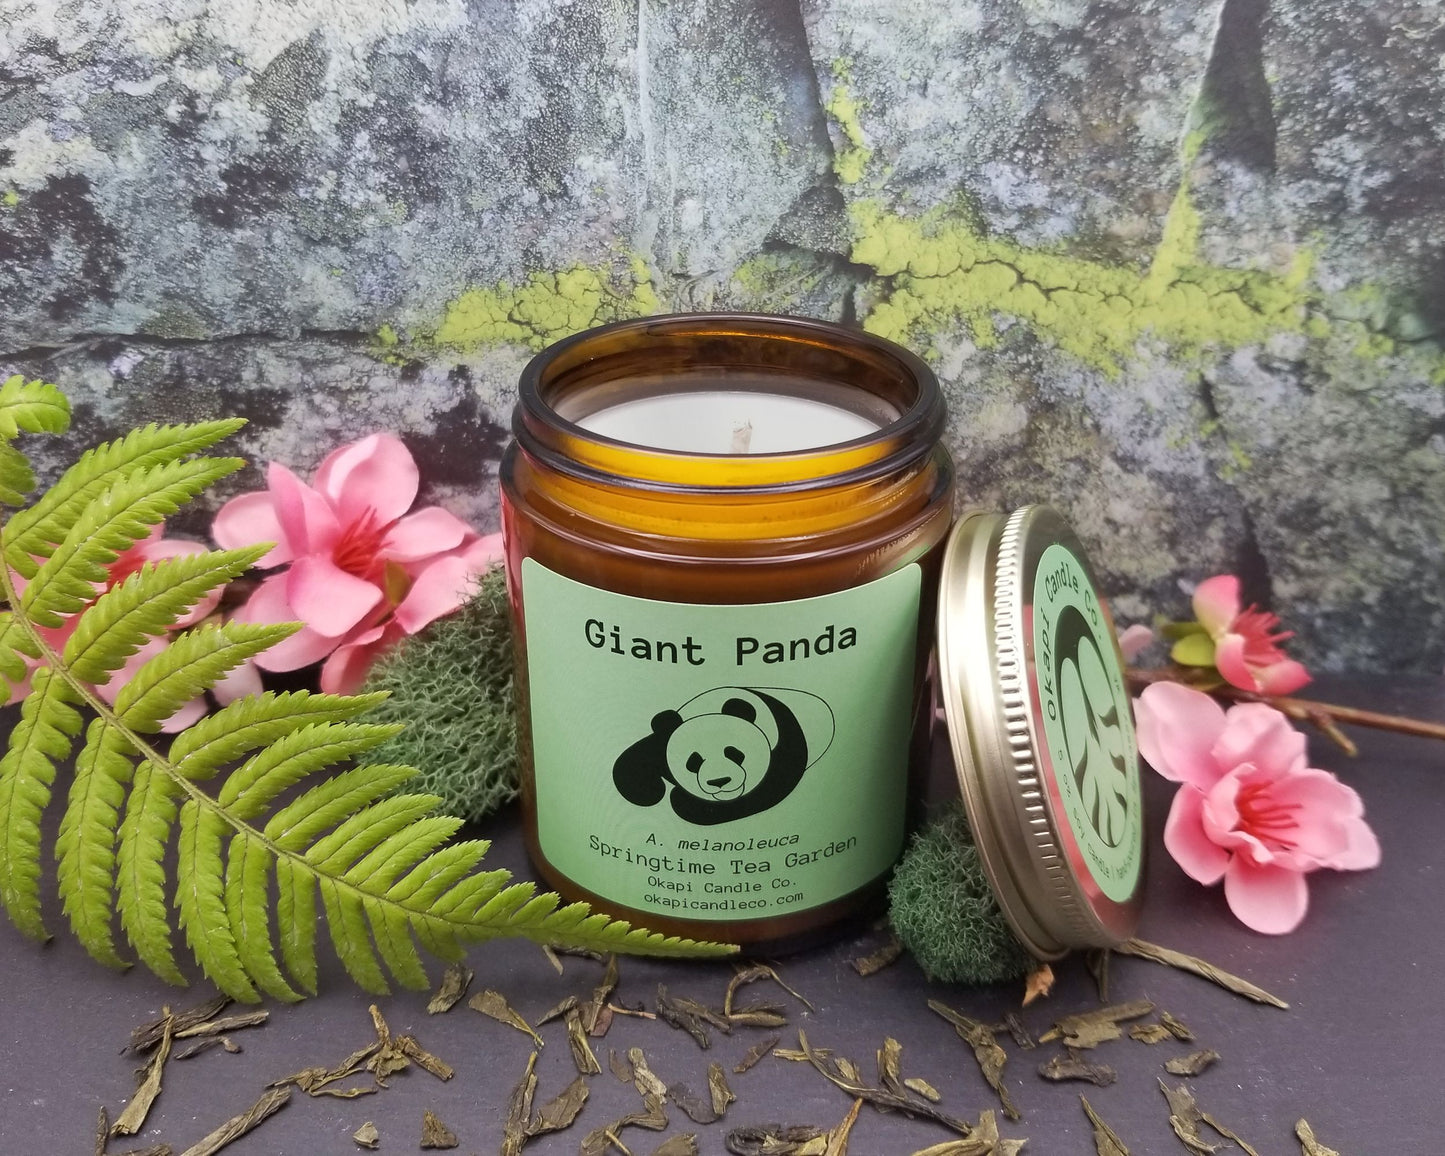 Giant Panda Soy Candle - Springtime Tea Garden Fragrance